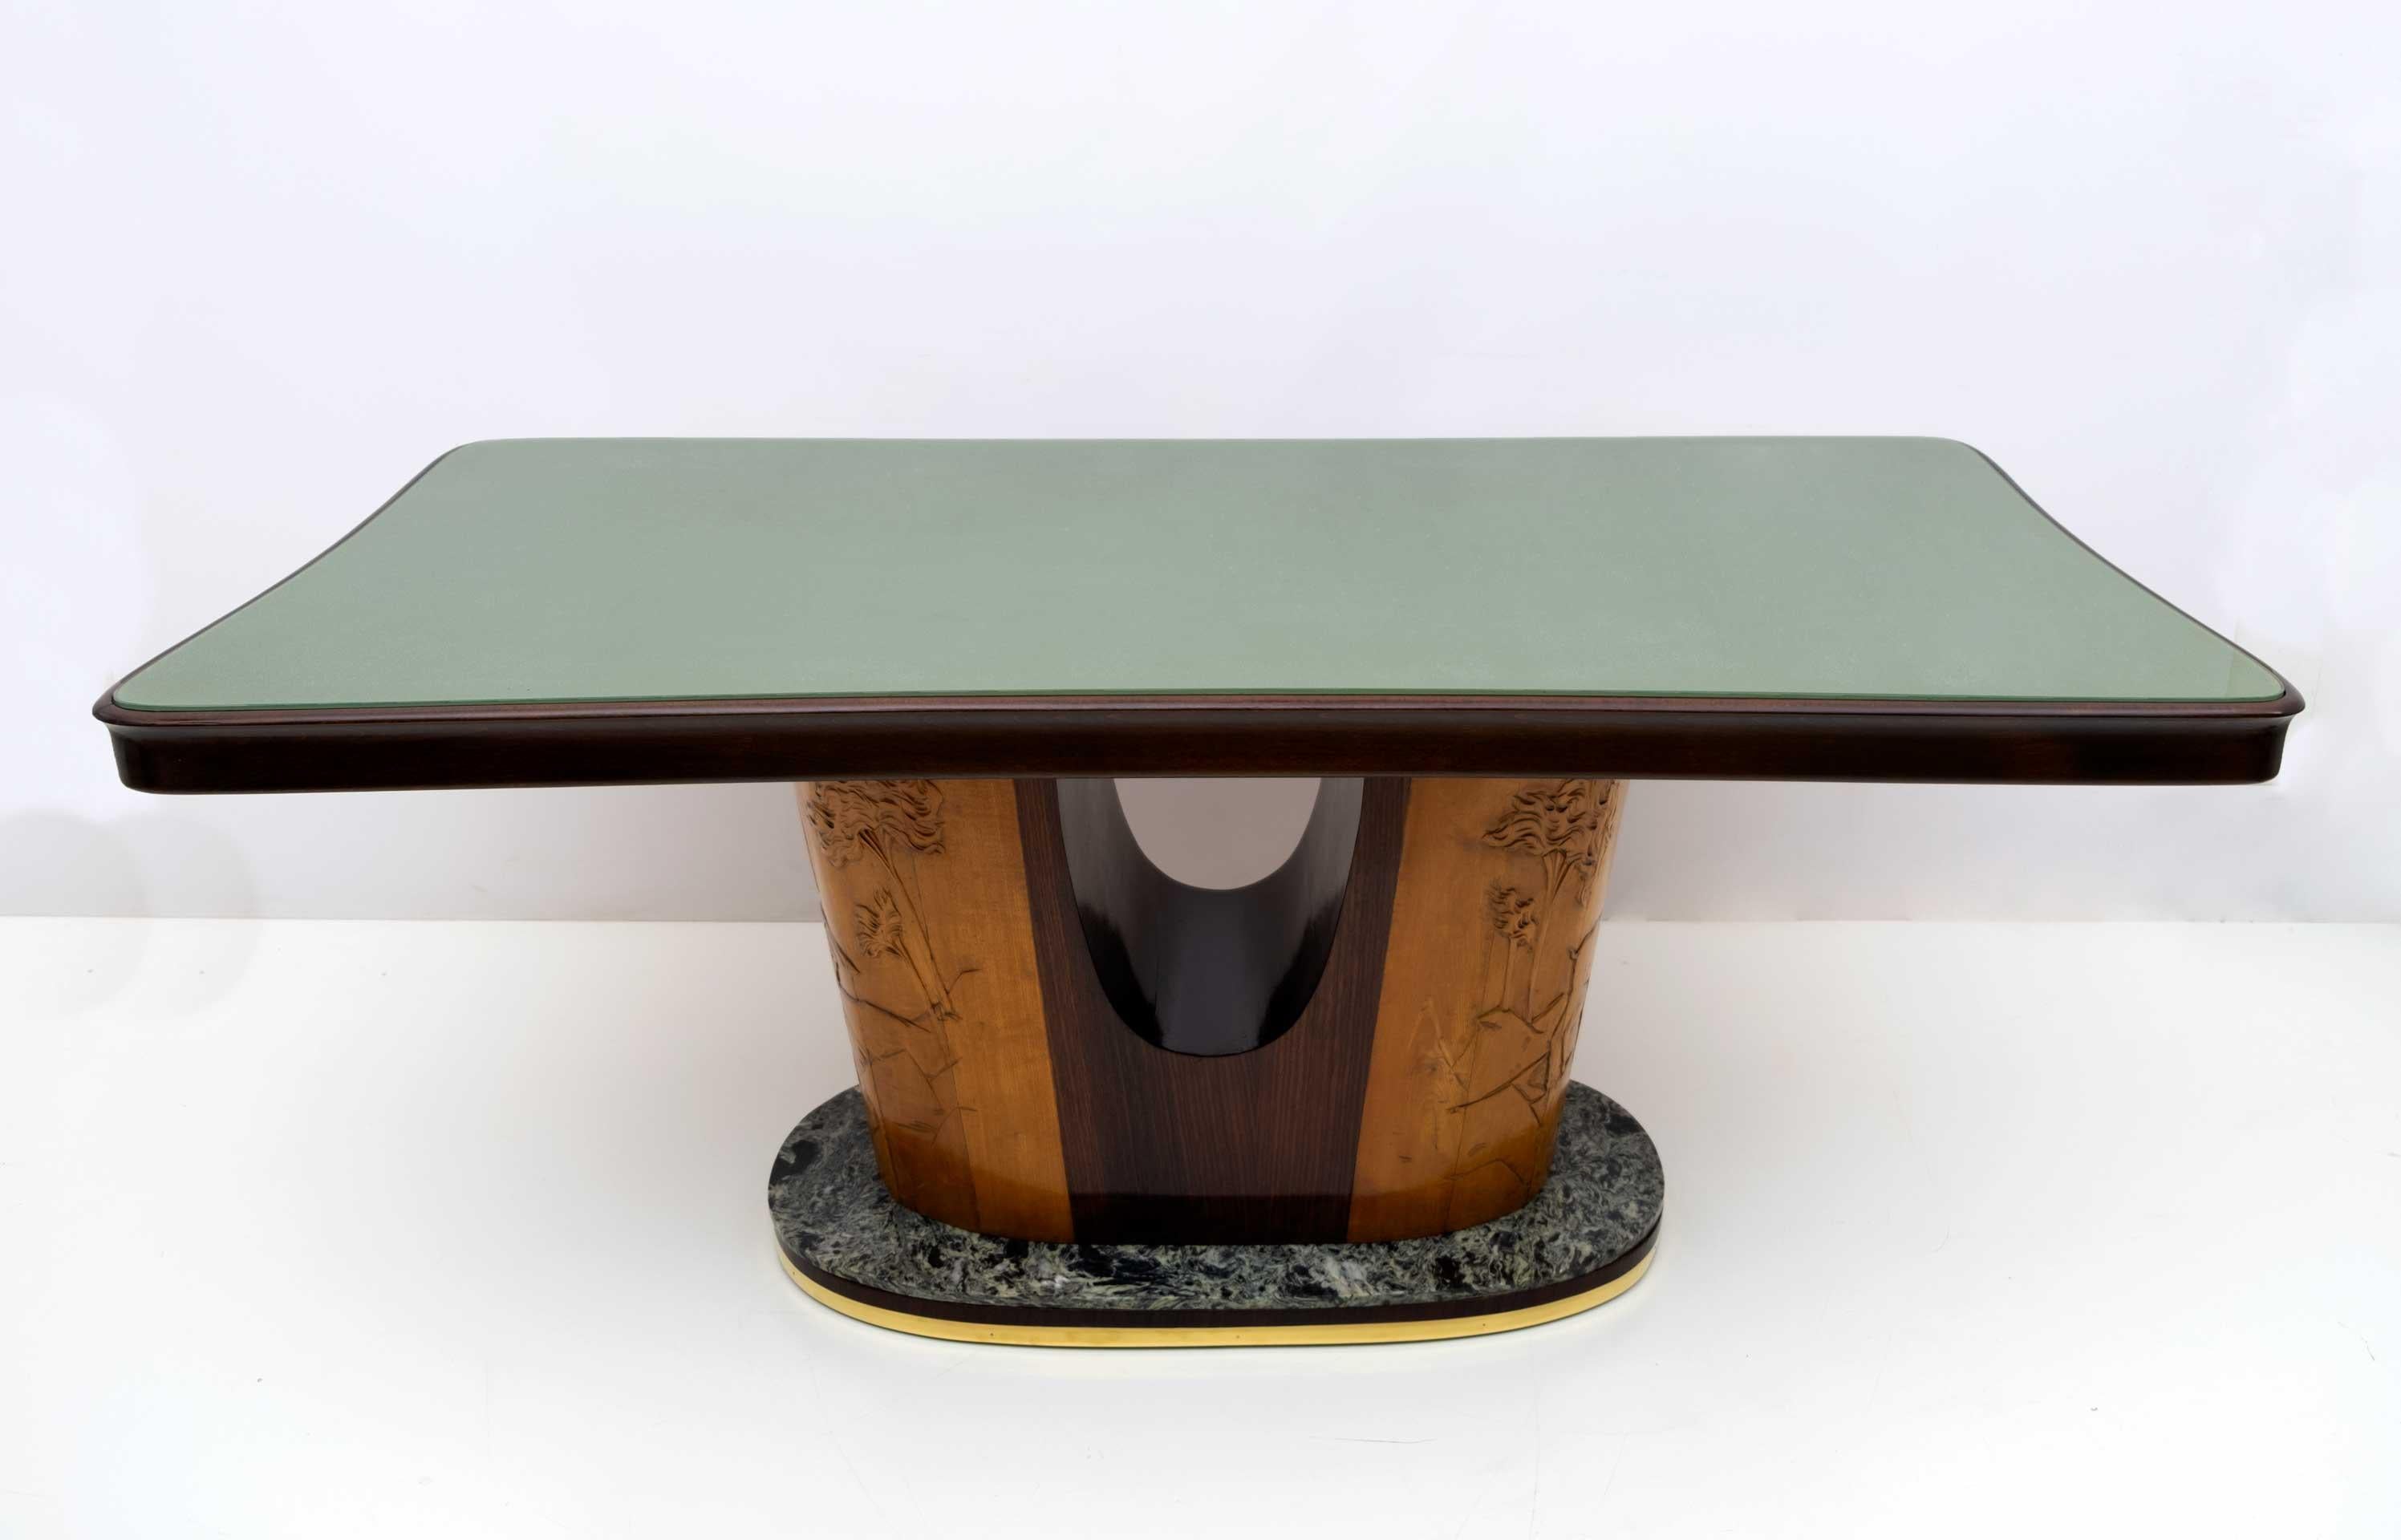 Schöner Tisch des berühmten italienischen Designers Vittorio Dassi aus der Jahrhundertmitte, 1950.
Die außergewöhnlichen Holzarbeiten werden durch die geschwungene grüne Glasplatte und die abgerundeten Kanten der Struktur hervorgehoben. Dieses